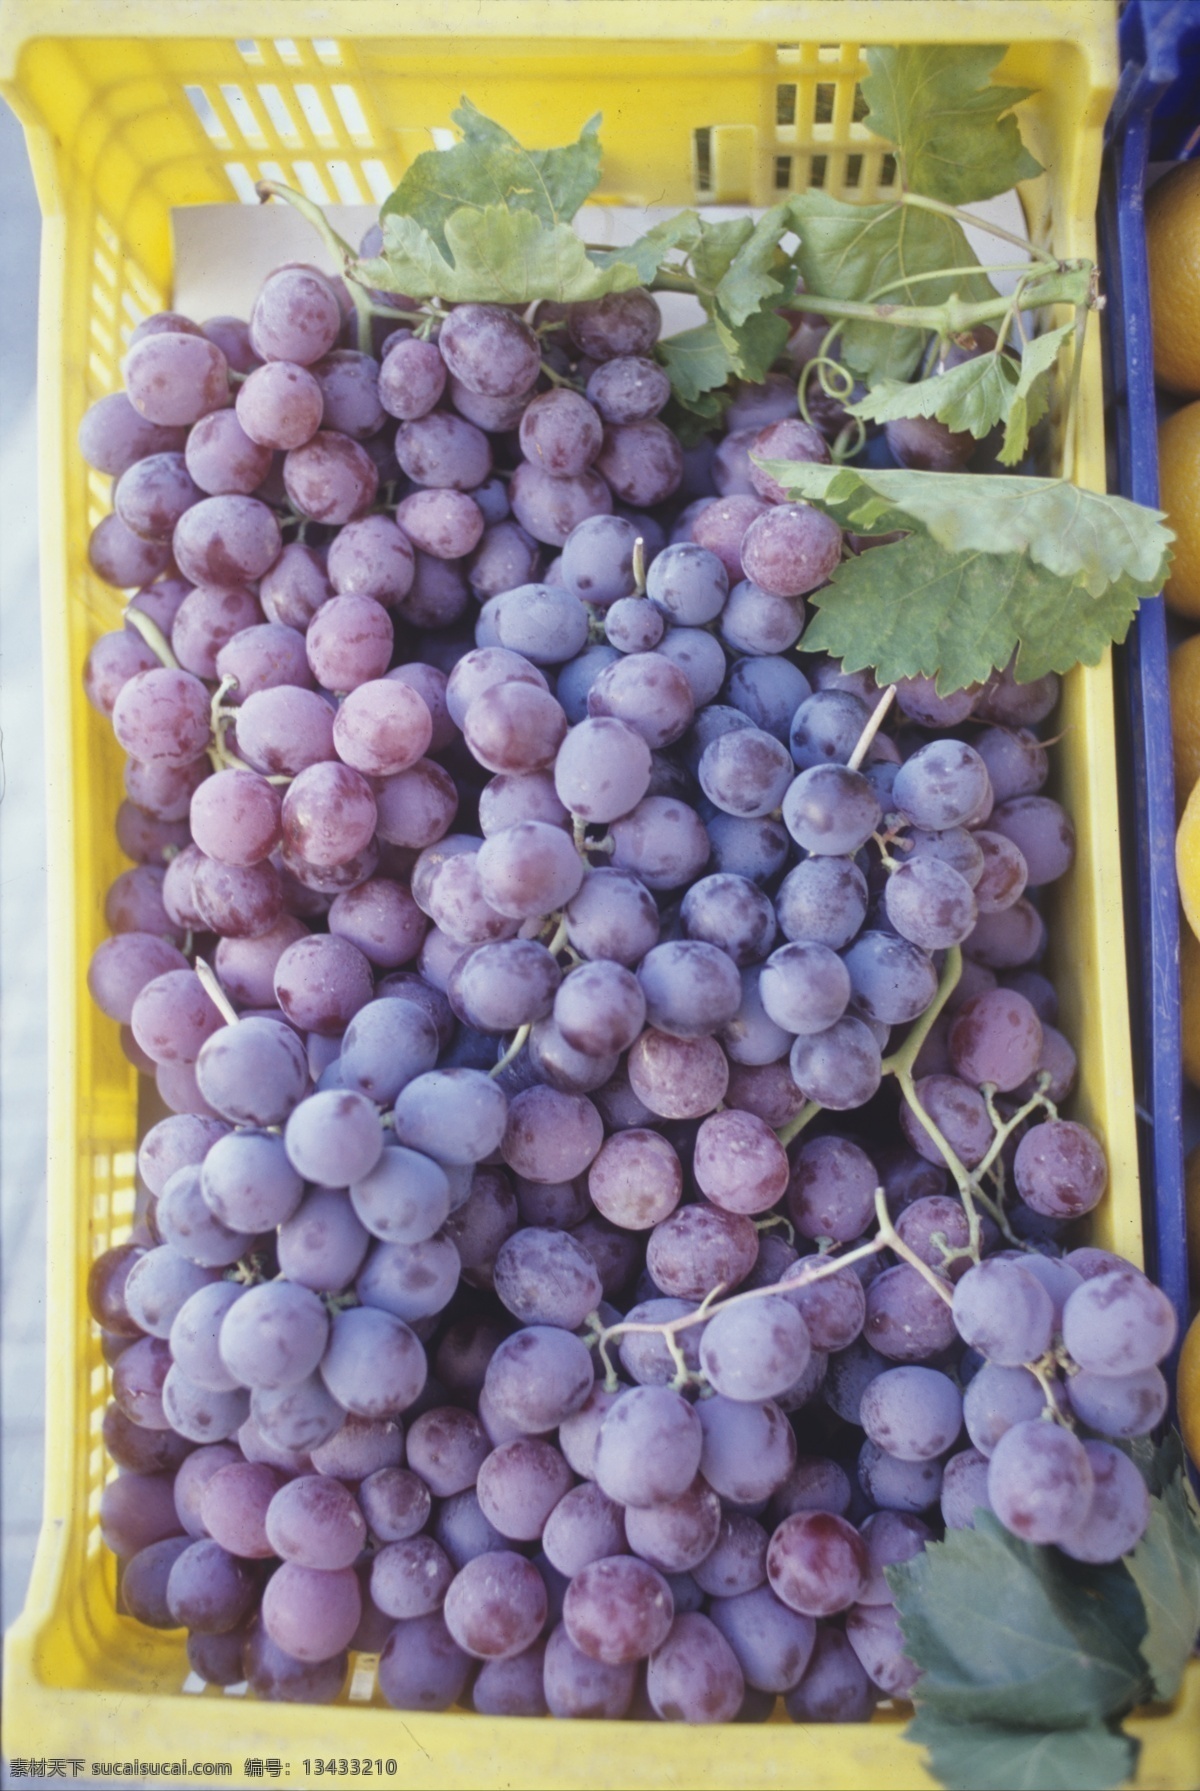 水果篮子 里 葡萄 果园 农场 葡萄园 果实 水果 篮子 丰收 葡萄串 特写 摄影图 高清图片 水果图片 餐饮美食